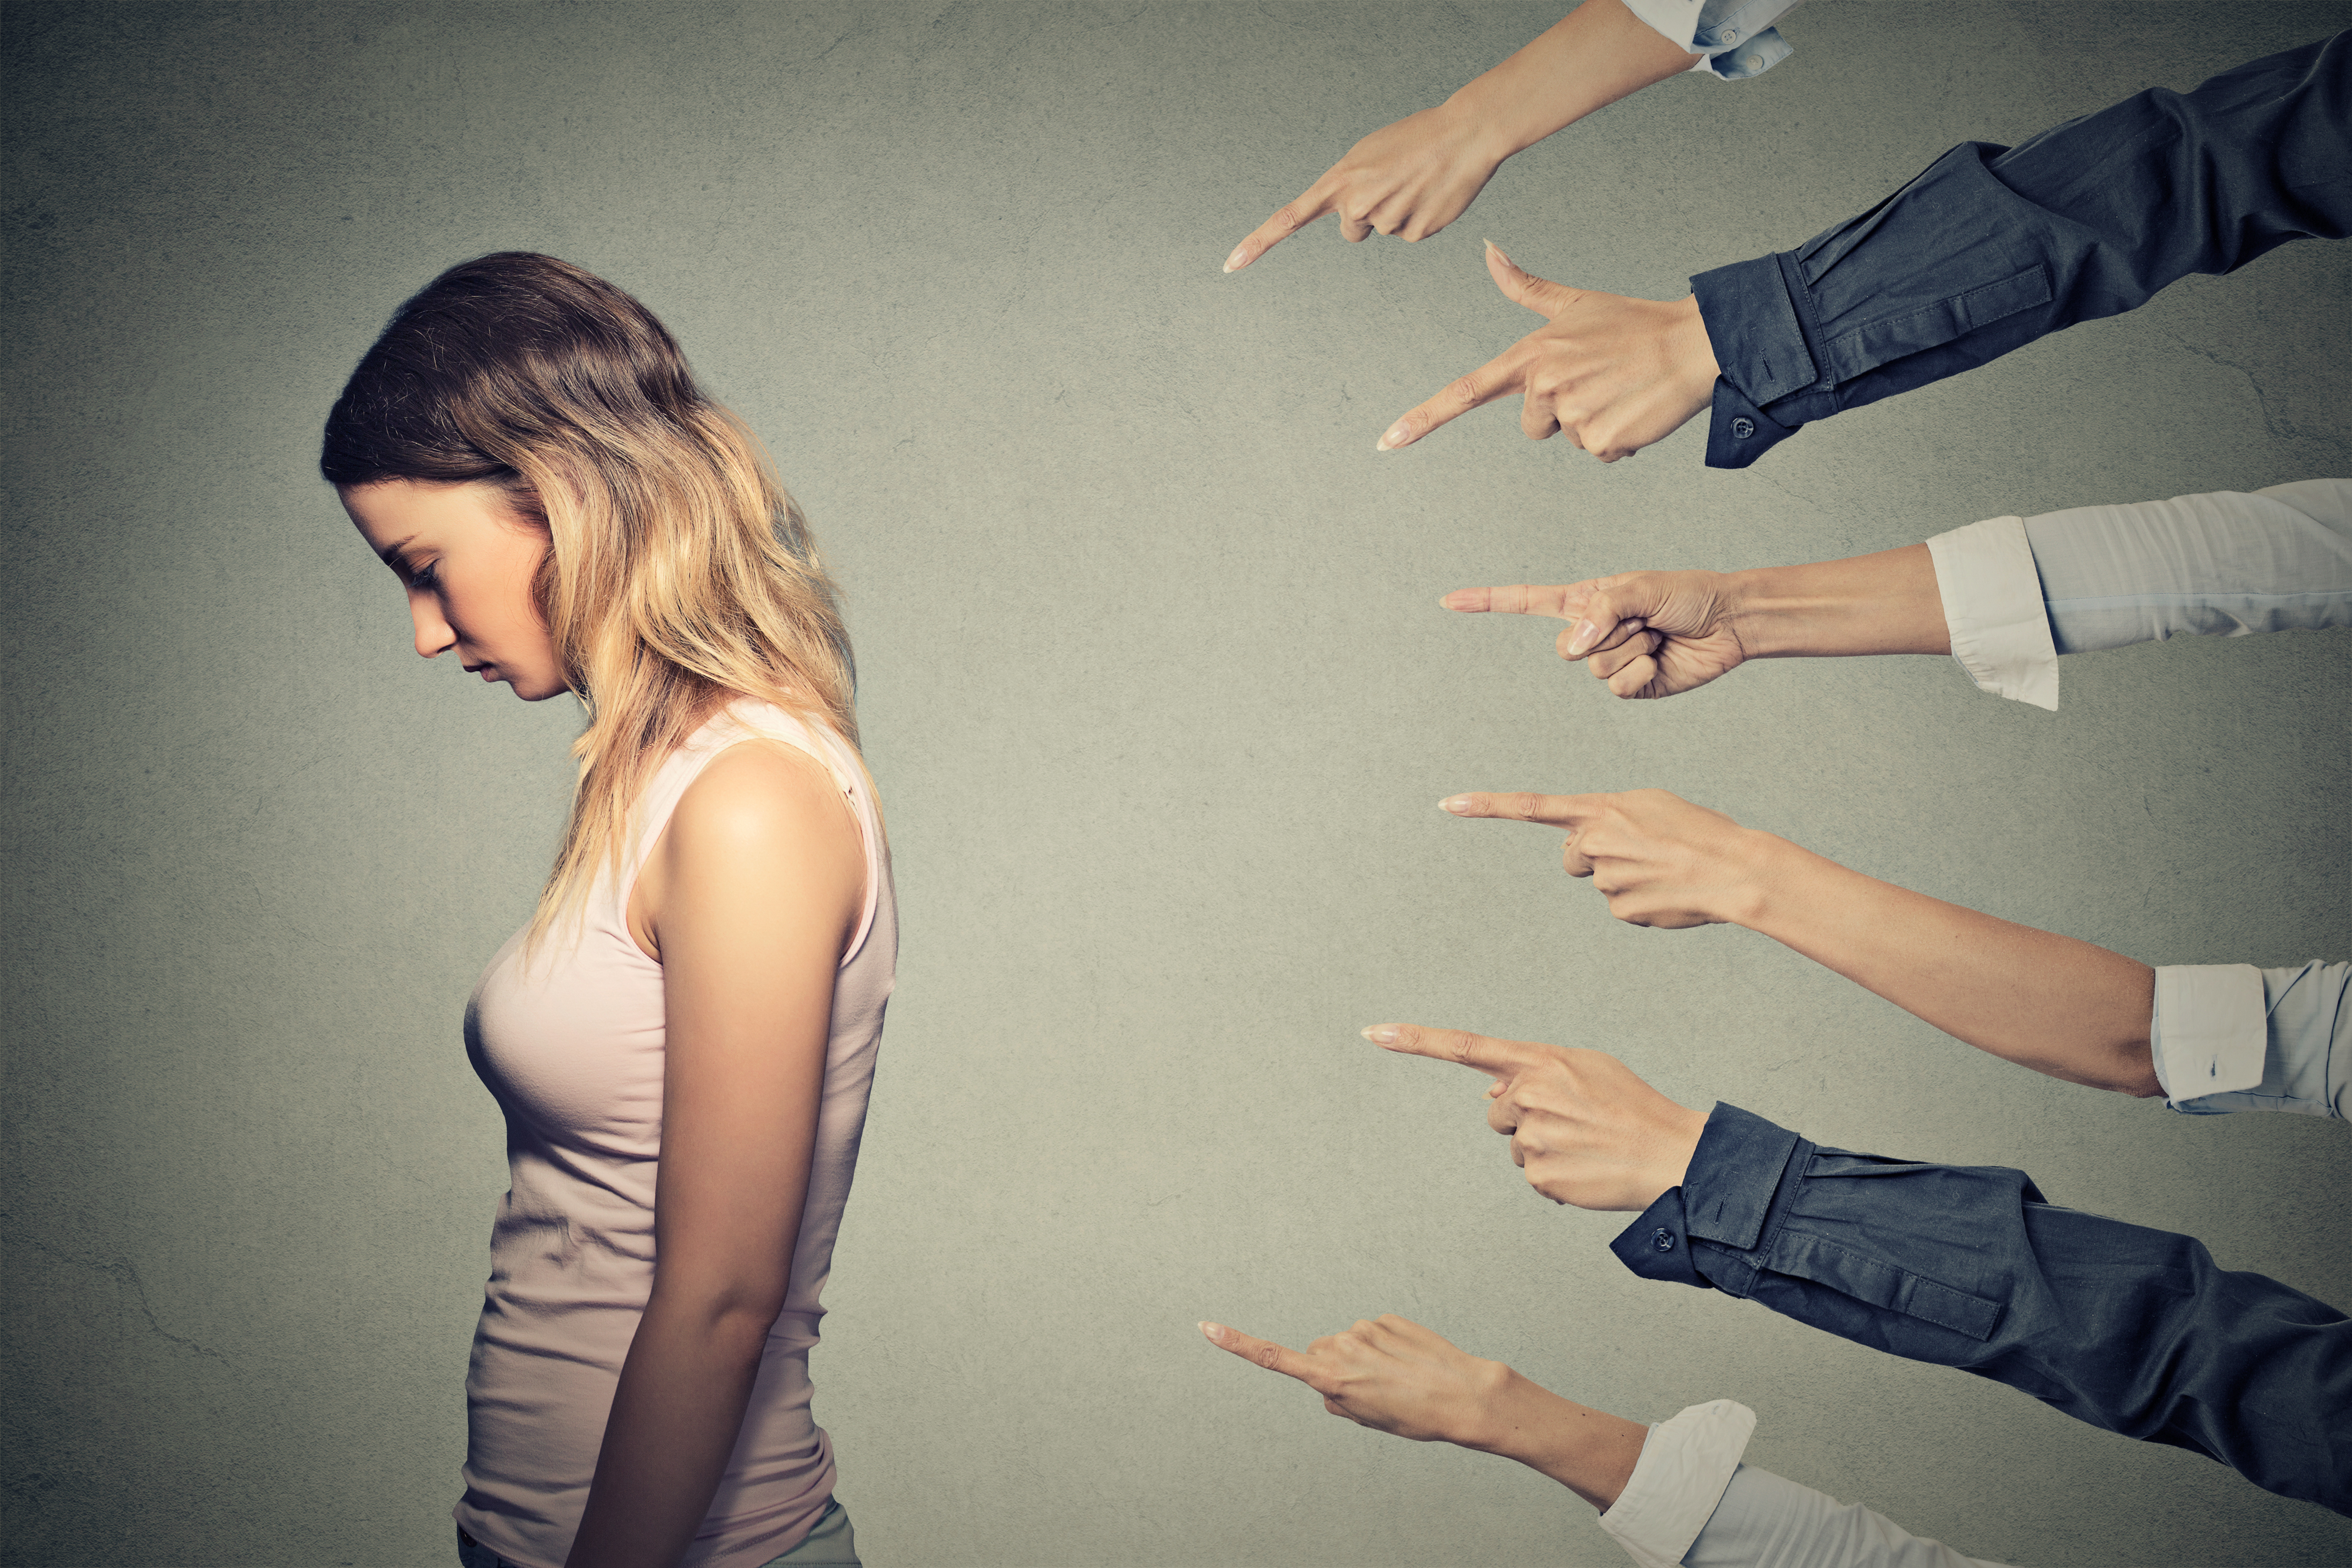 Femme contrariée avec de nombreuses mains pointées vers elle | Source : Shutterstock